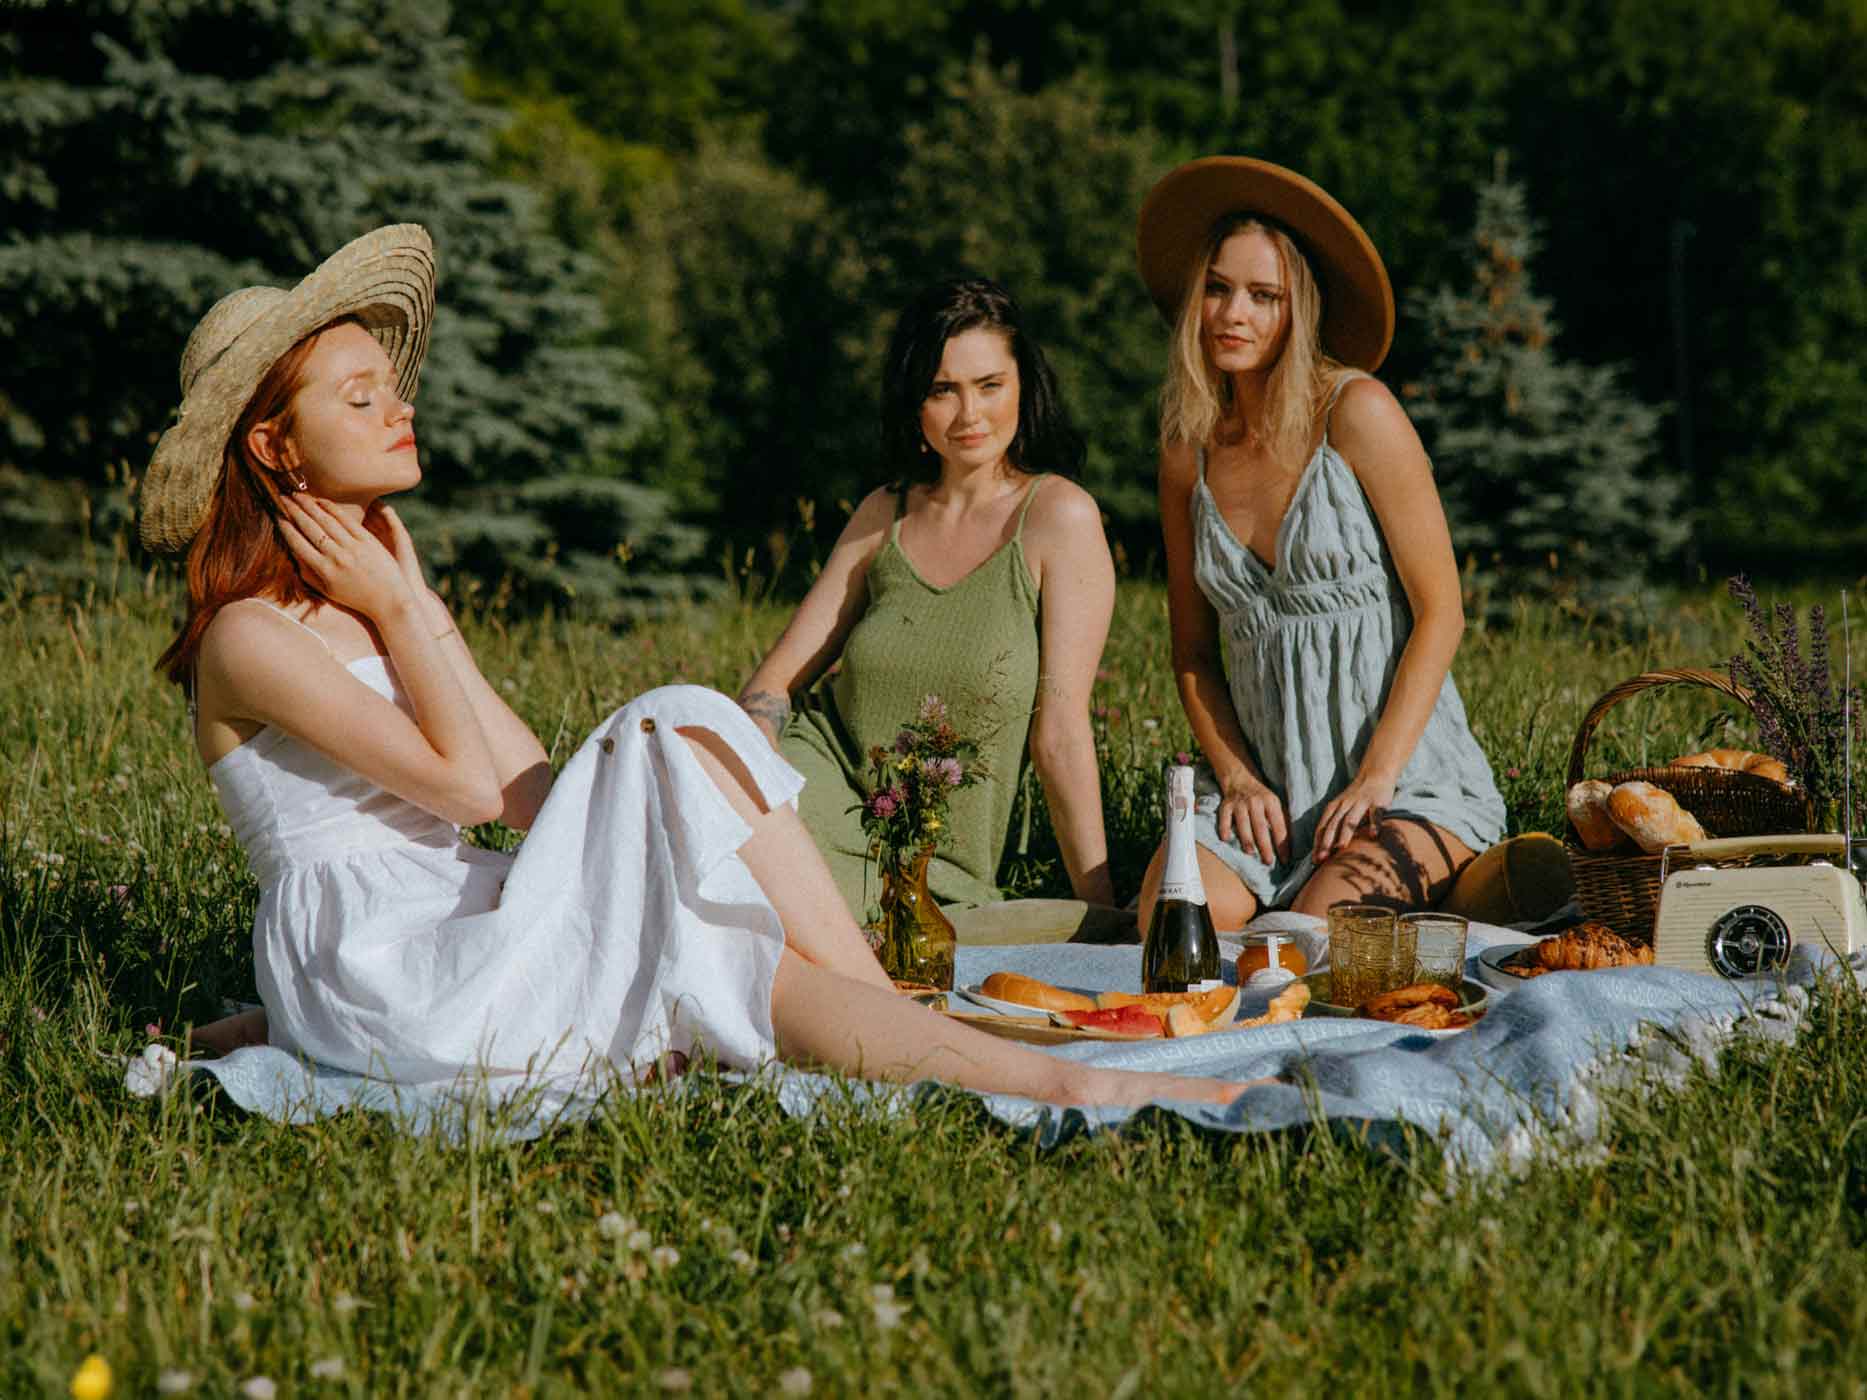 Drei Frauen sitzen auf einer Picknickdecke und tragen unterschiedliche Kleiderformen und Farben